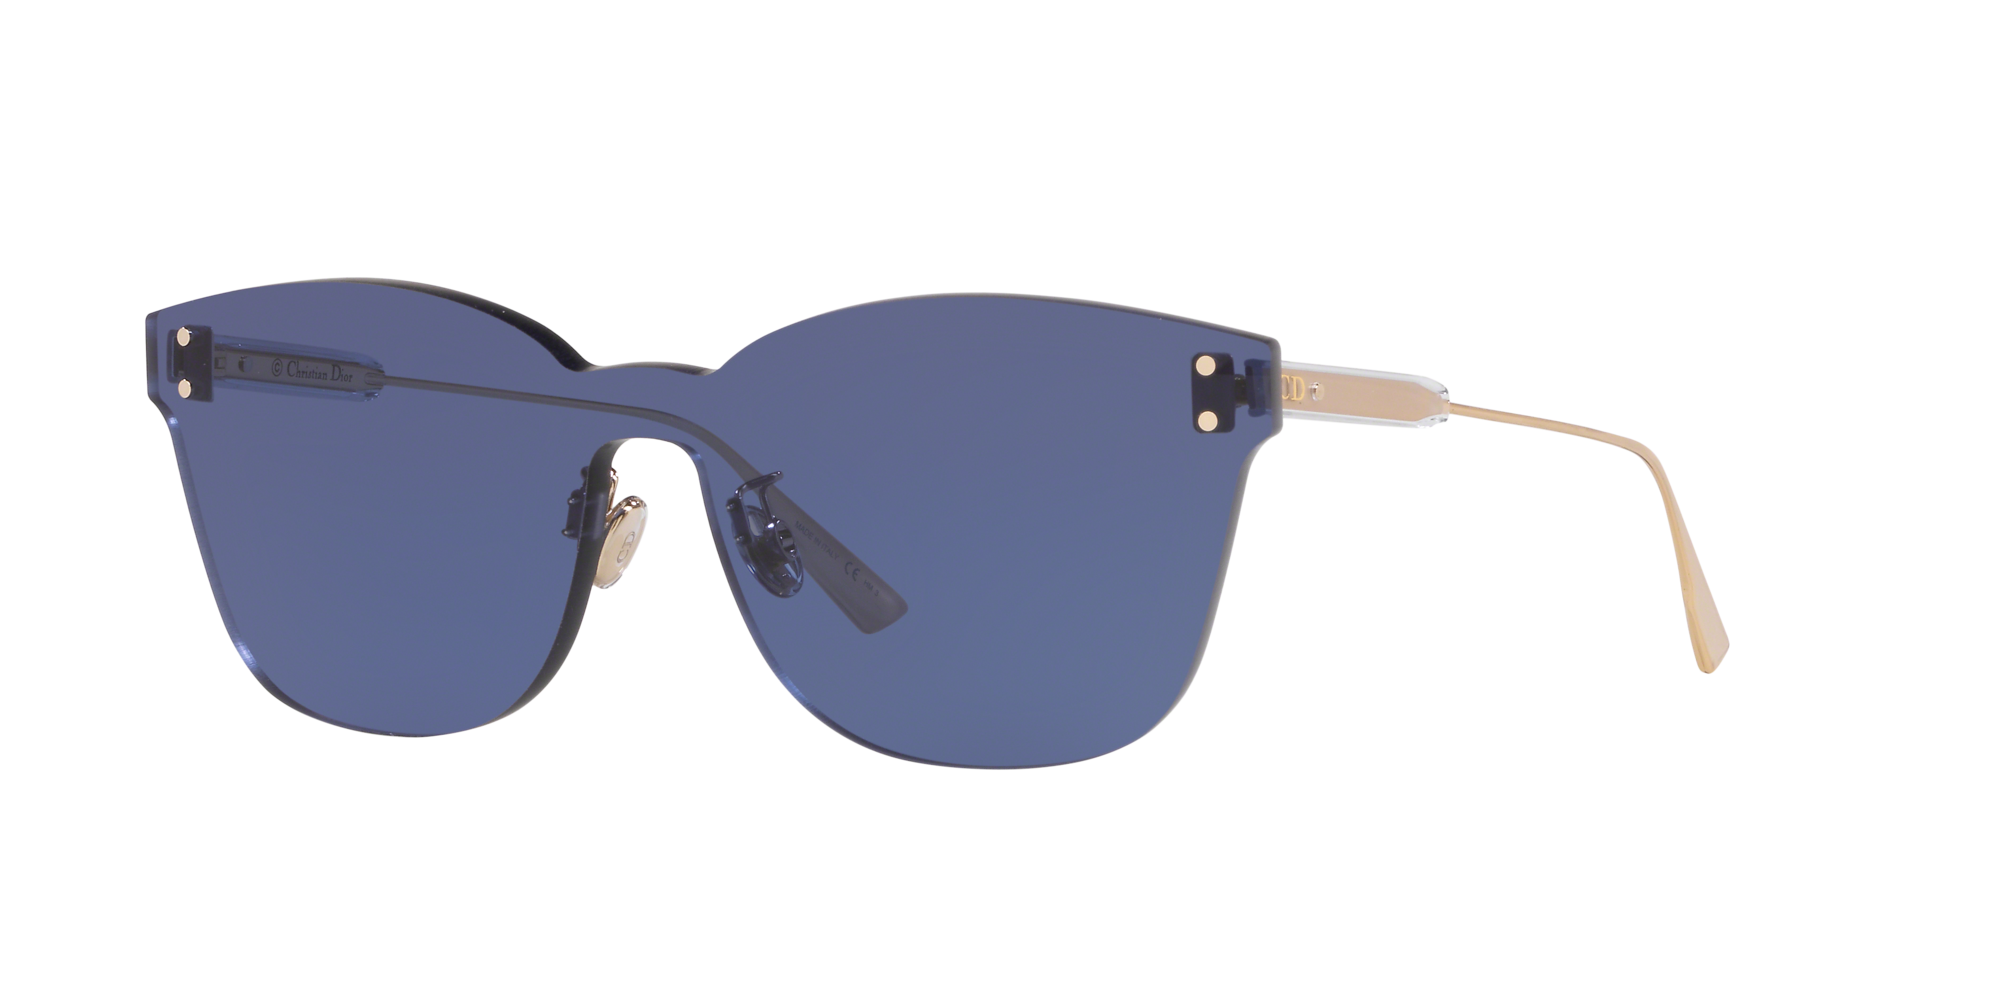 dior sunglasses blue lens